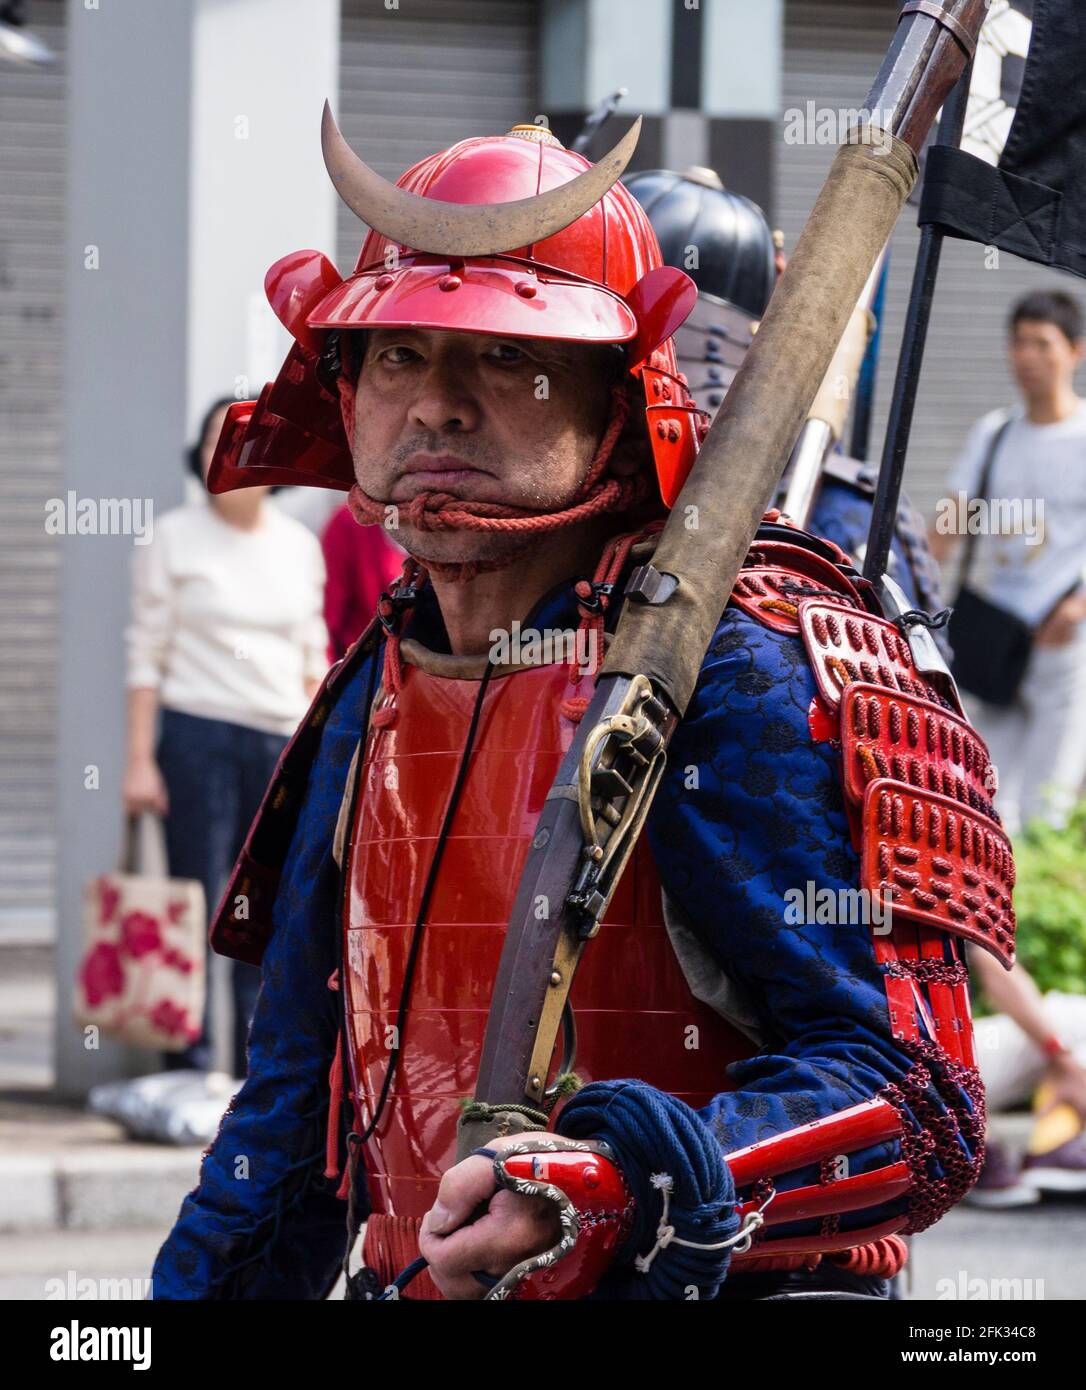 Gifu, Japan - 4. Oktober 2015: Mann, der als Samurai in Rüstung mit Hackbut gekleidet war, während der 59. Jährlichen Nobunaga Festival historischen Nachstellung Parade Stockfoto